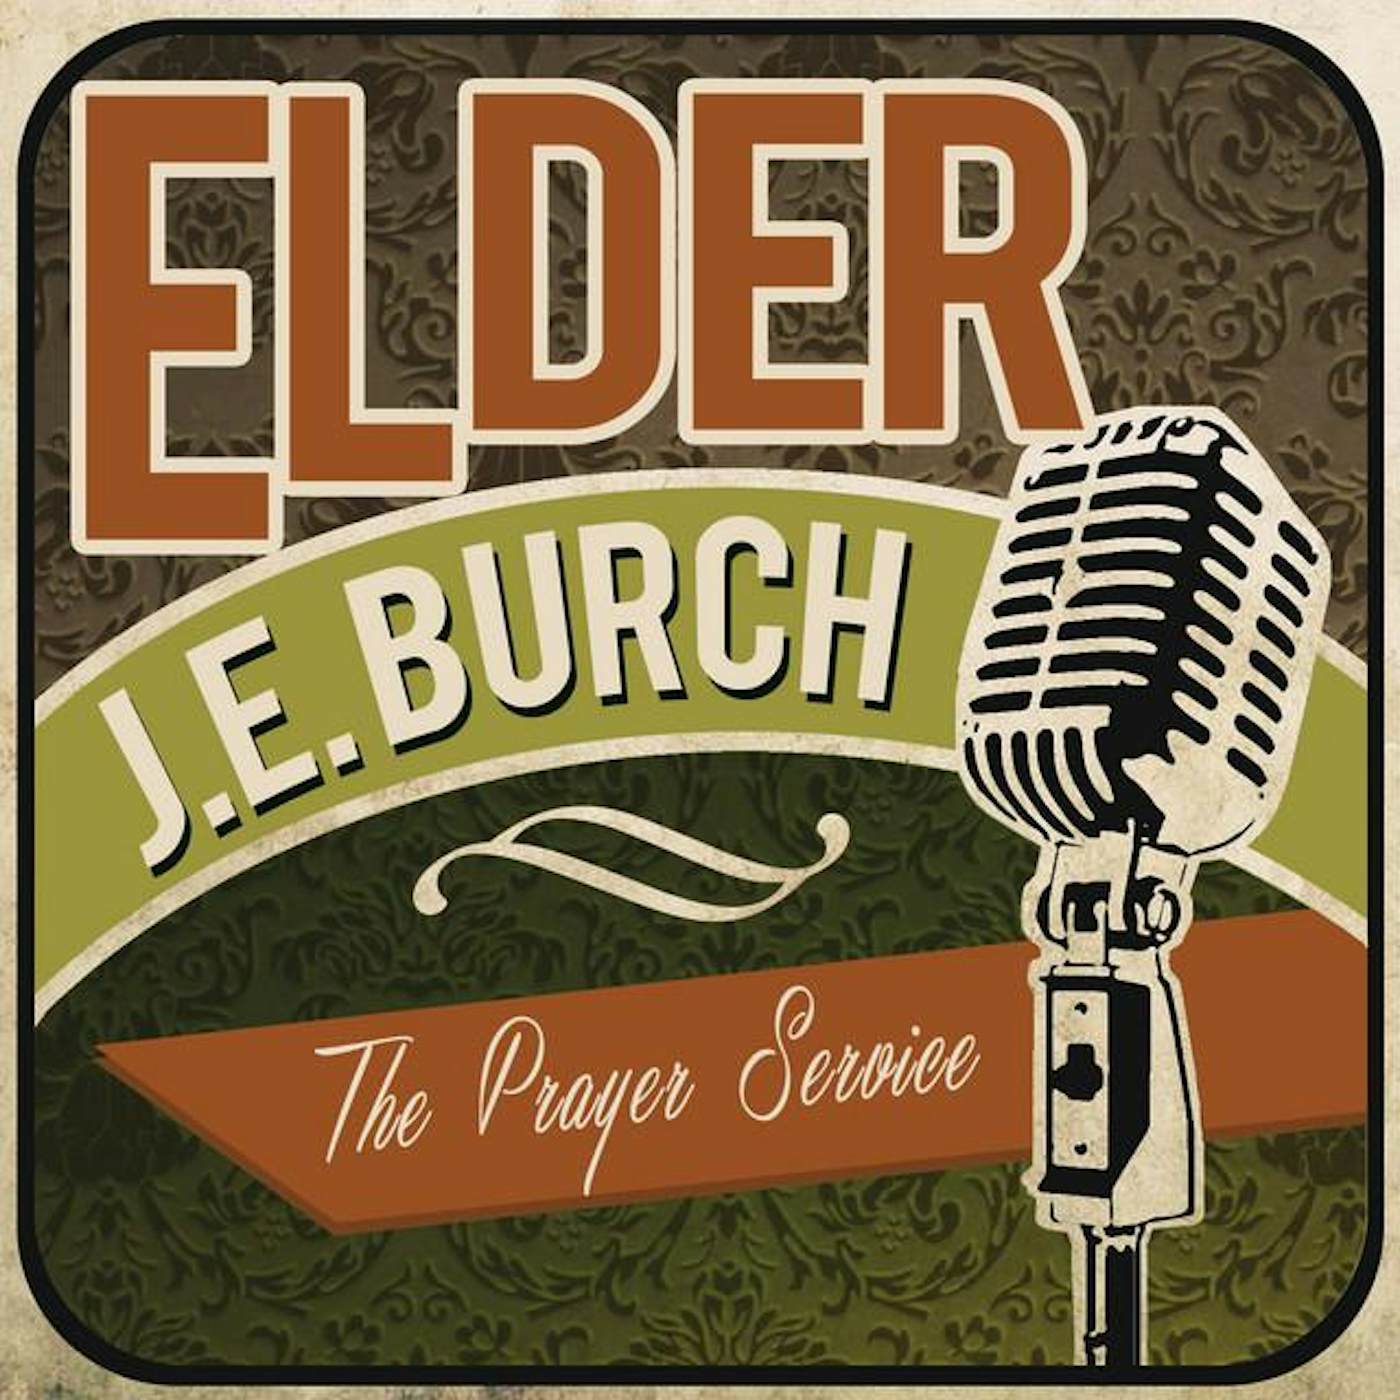 Elder J.E. Burch